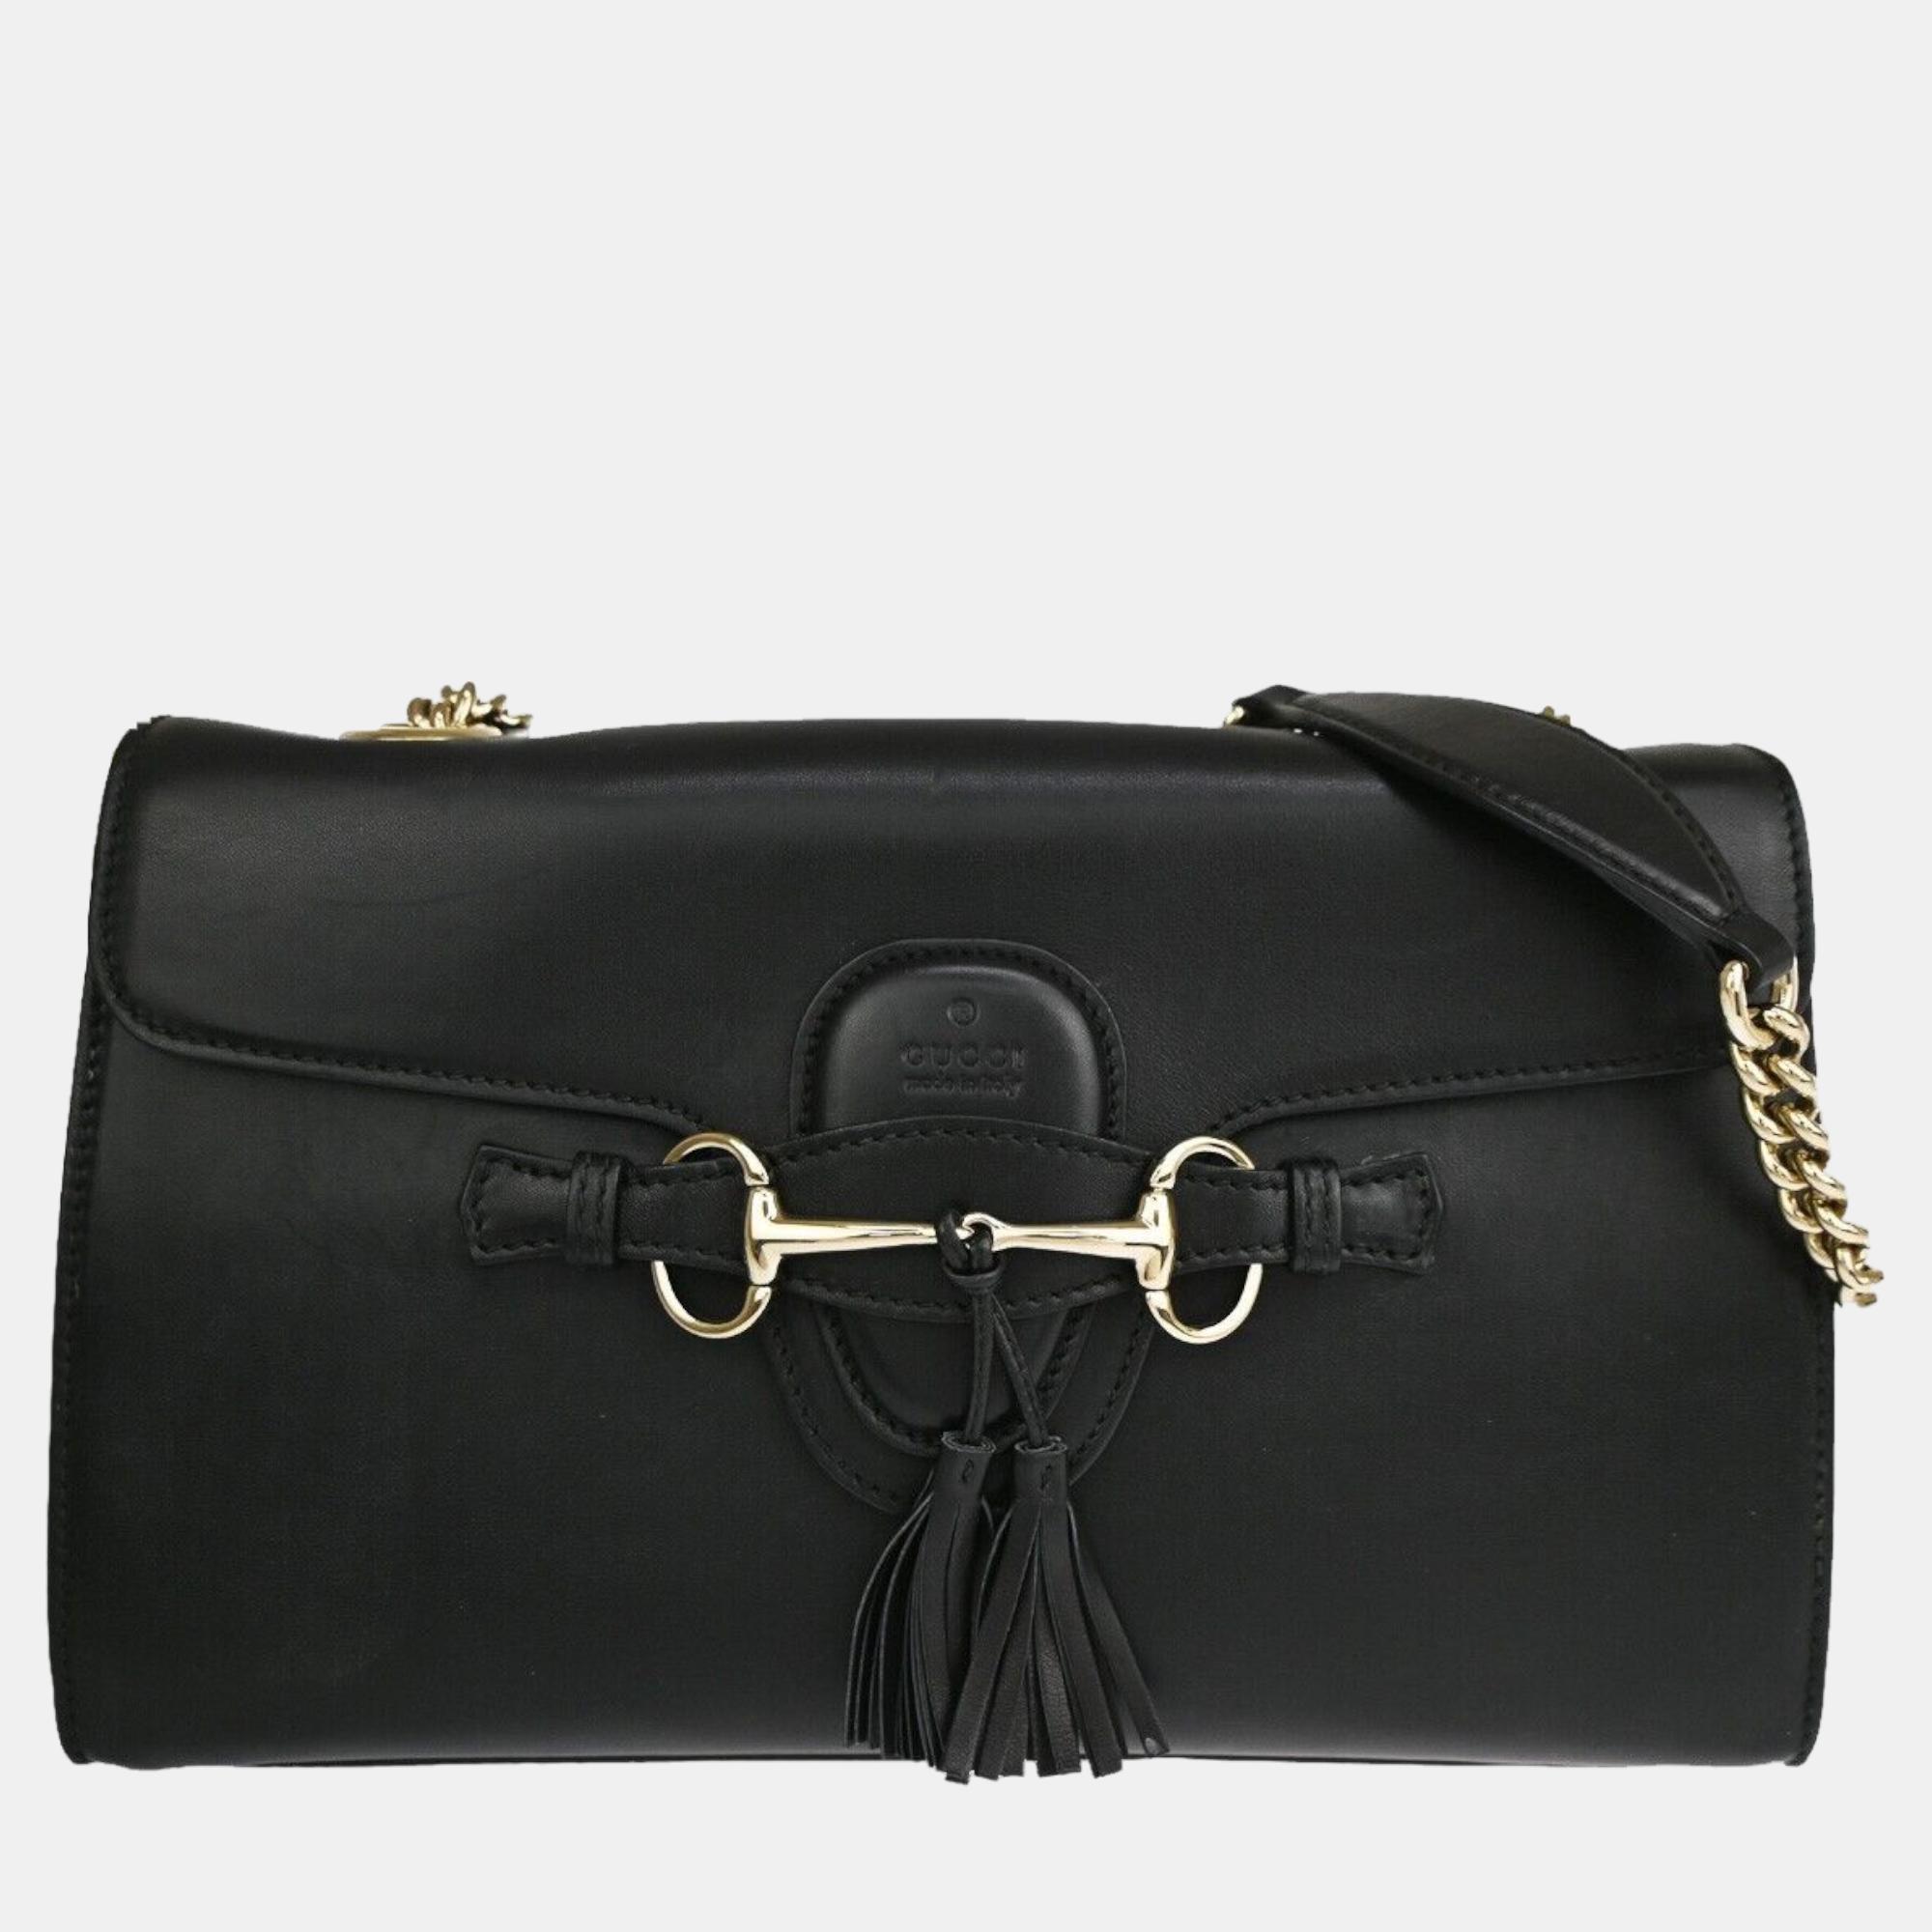 

Gucci Black Leather Emily shoulder bag